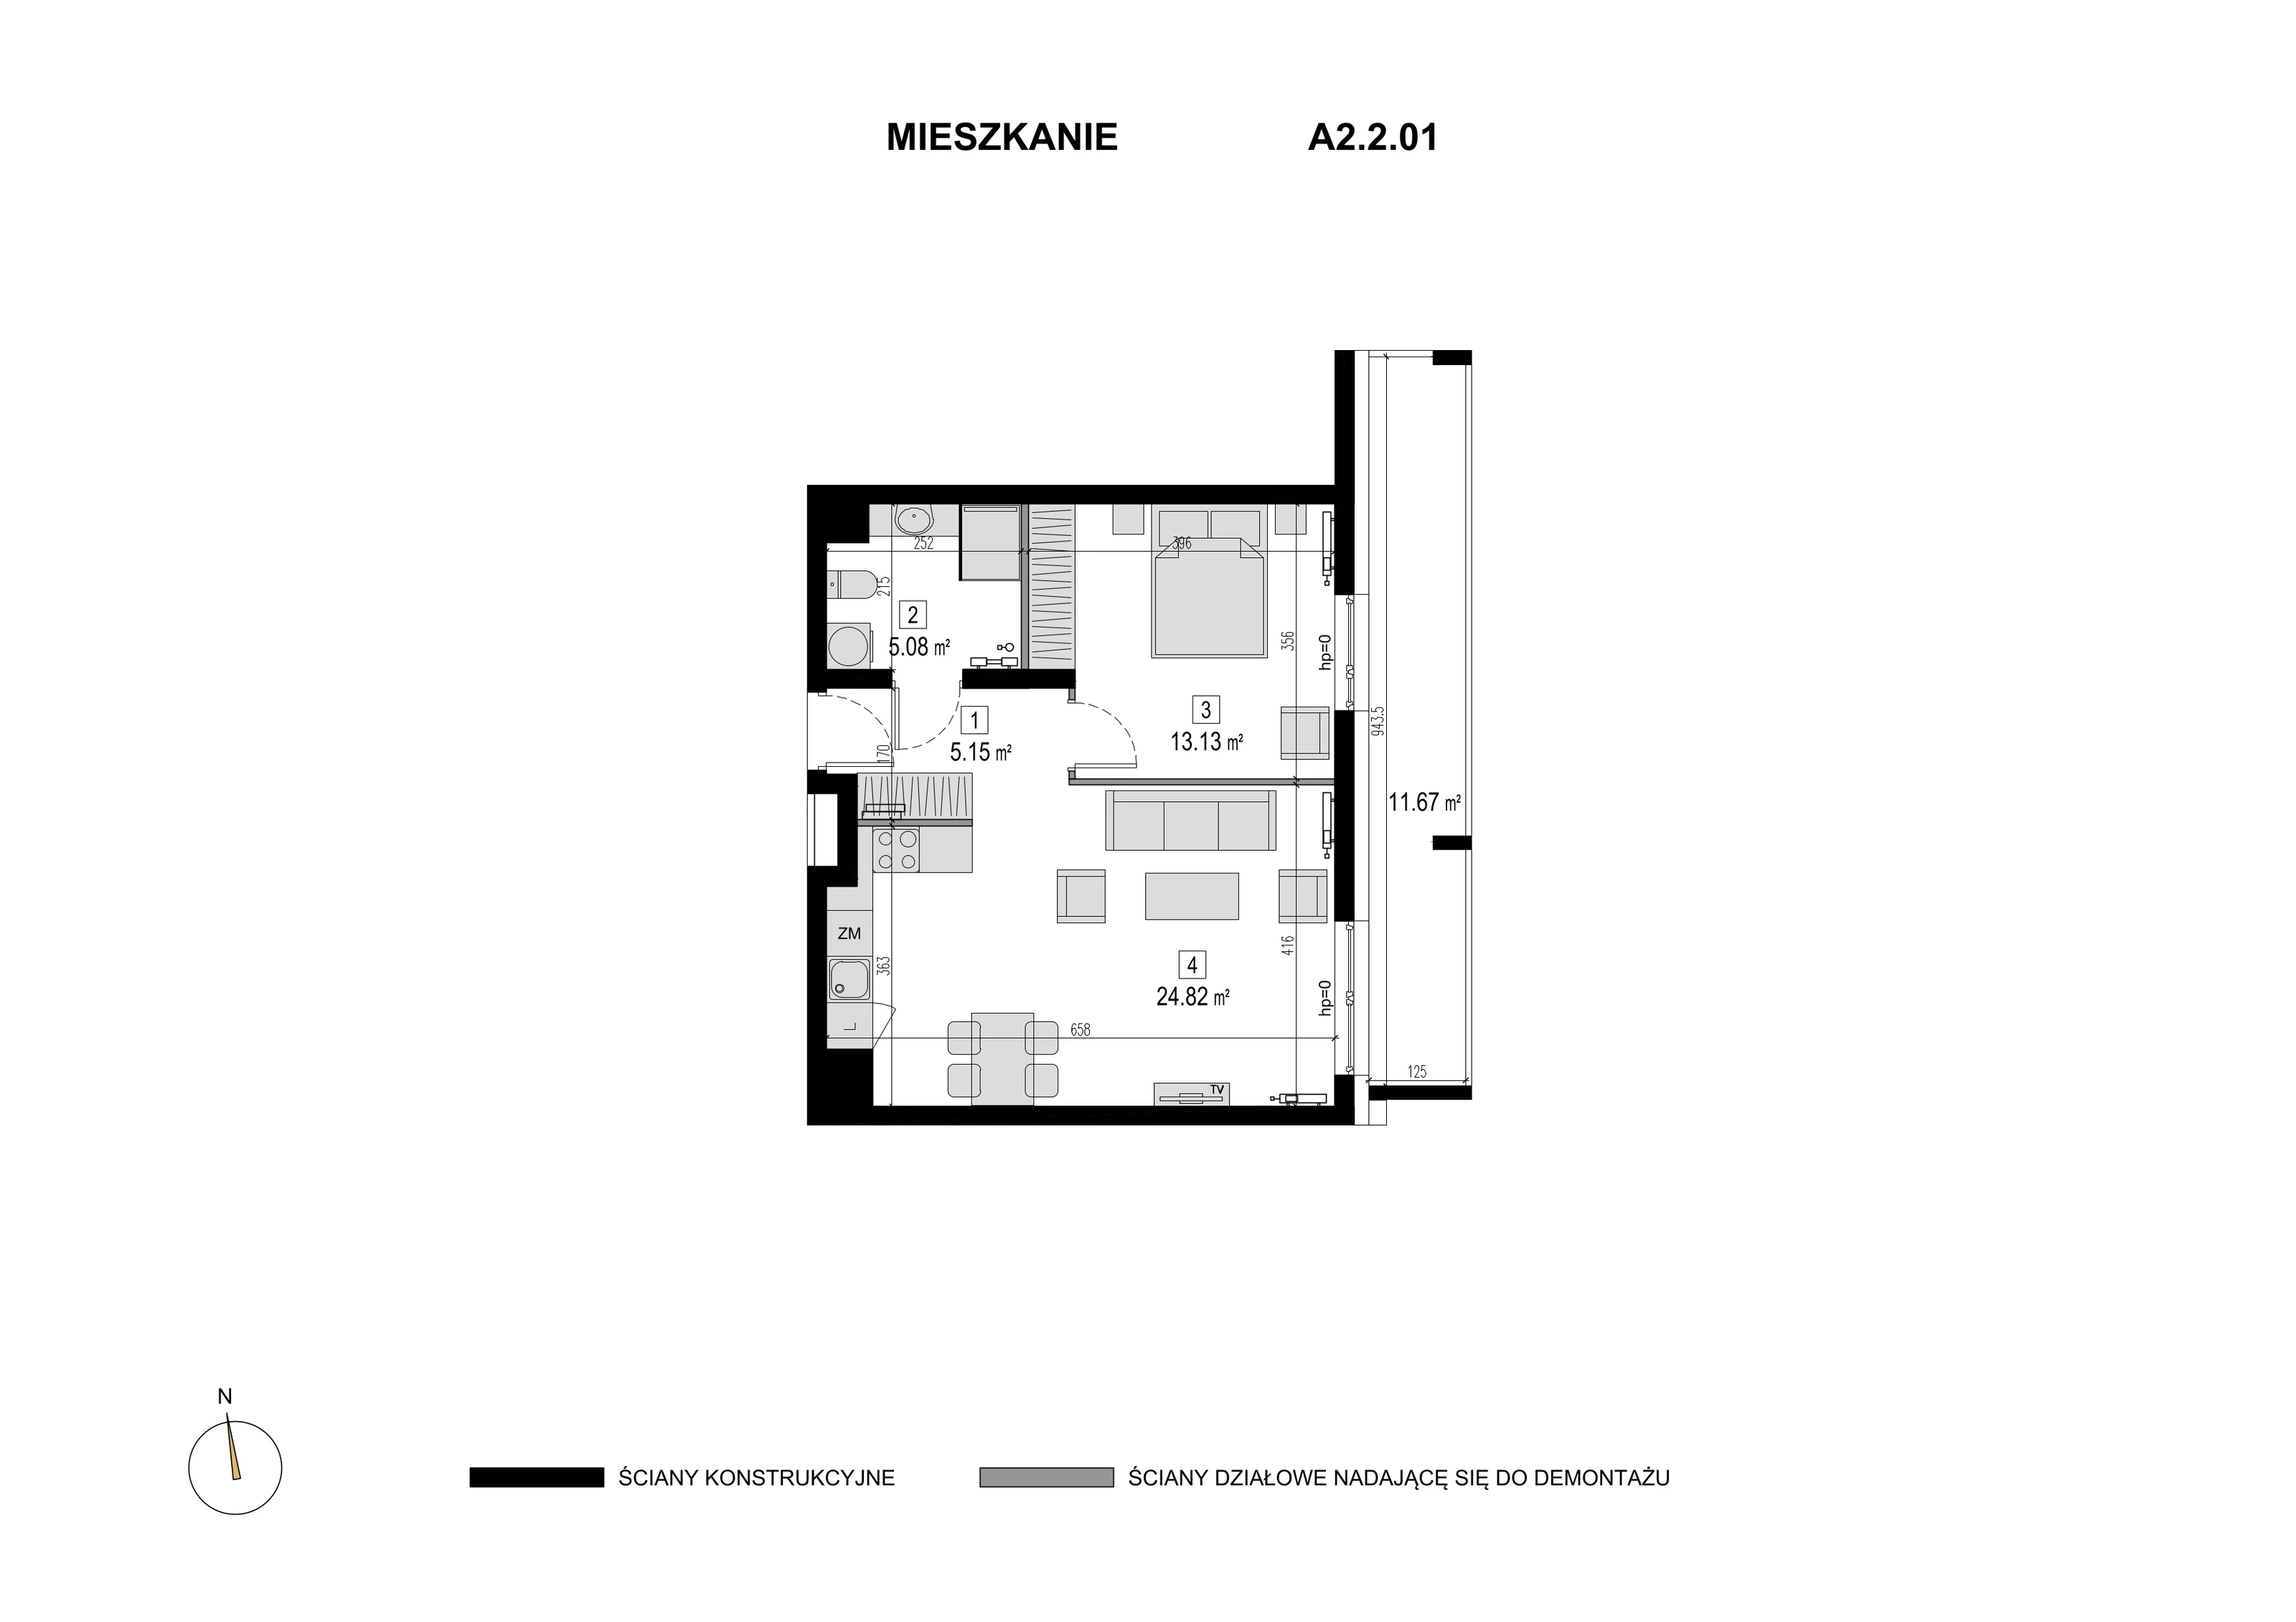 Mieszkanie 48,18 m², piętro 1, oferta nr A2.2.01, Novaforma, Legnica, ul. Chojnowska